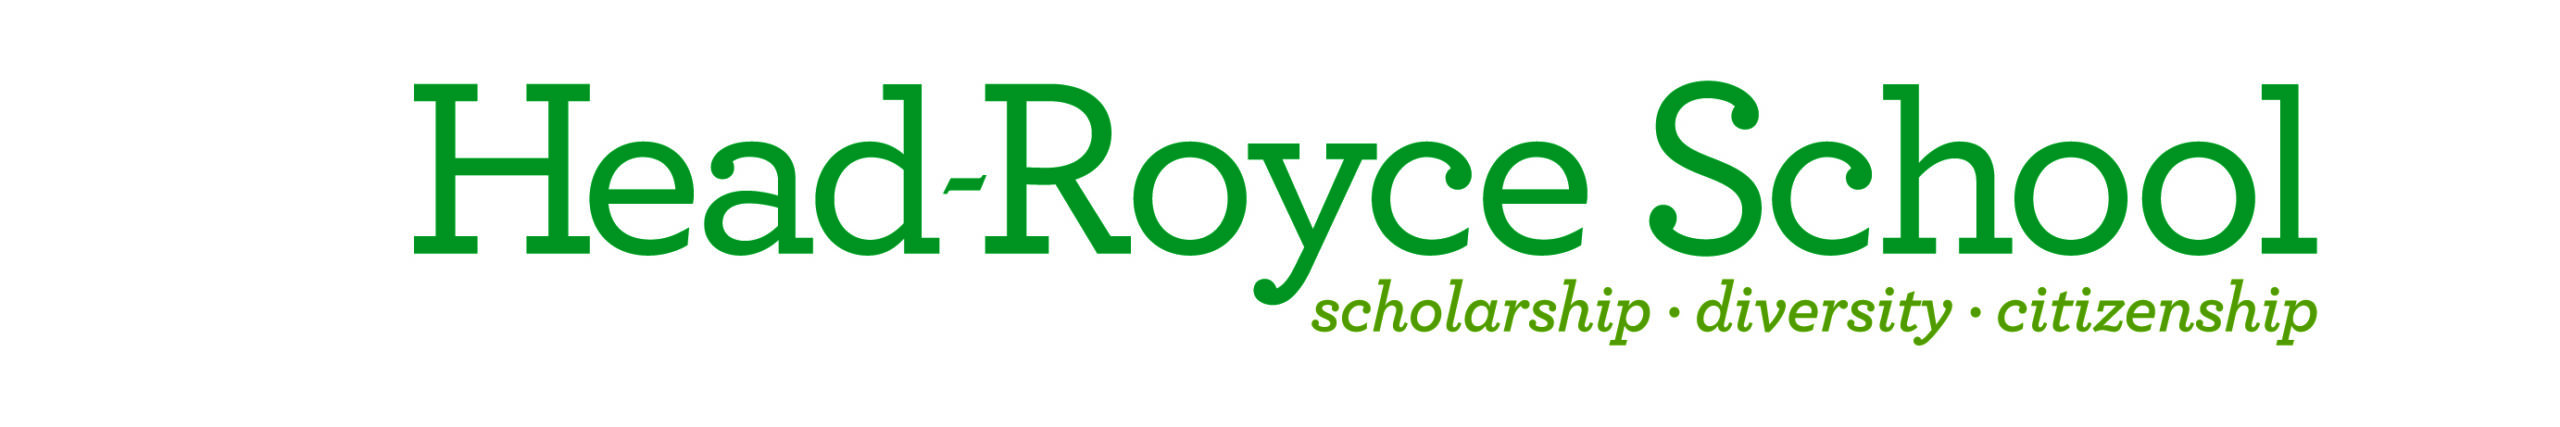 Head-Royce School logo